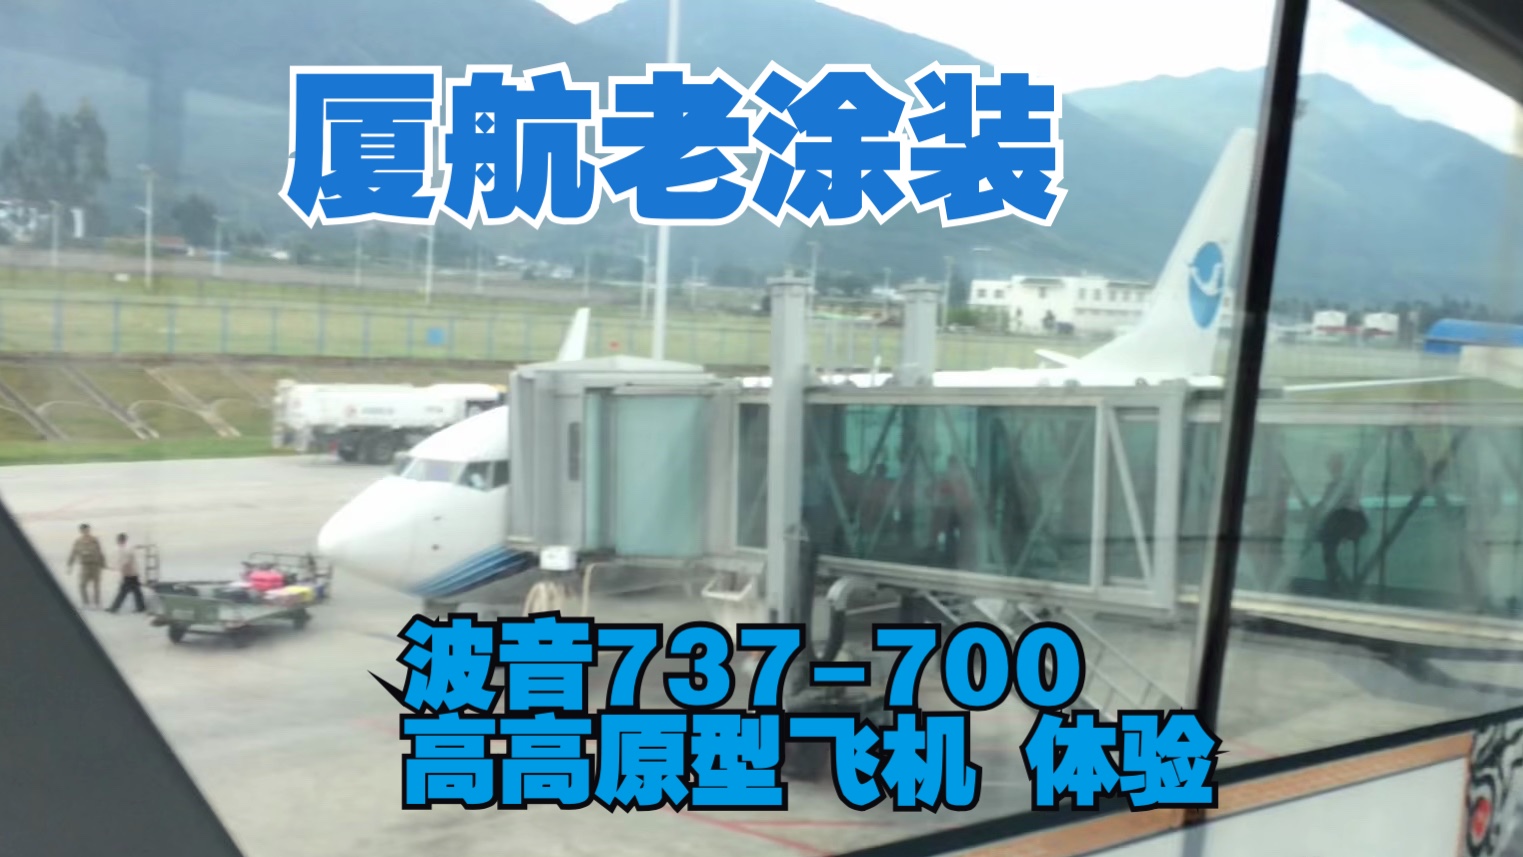 8年前的素材 厦航老涂装 丽江-贵阳波音737 高高原型体验